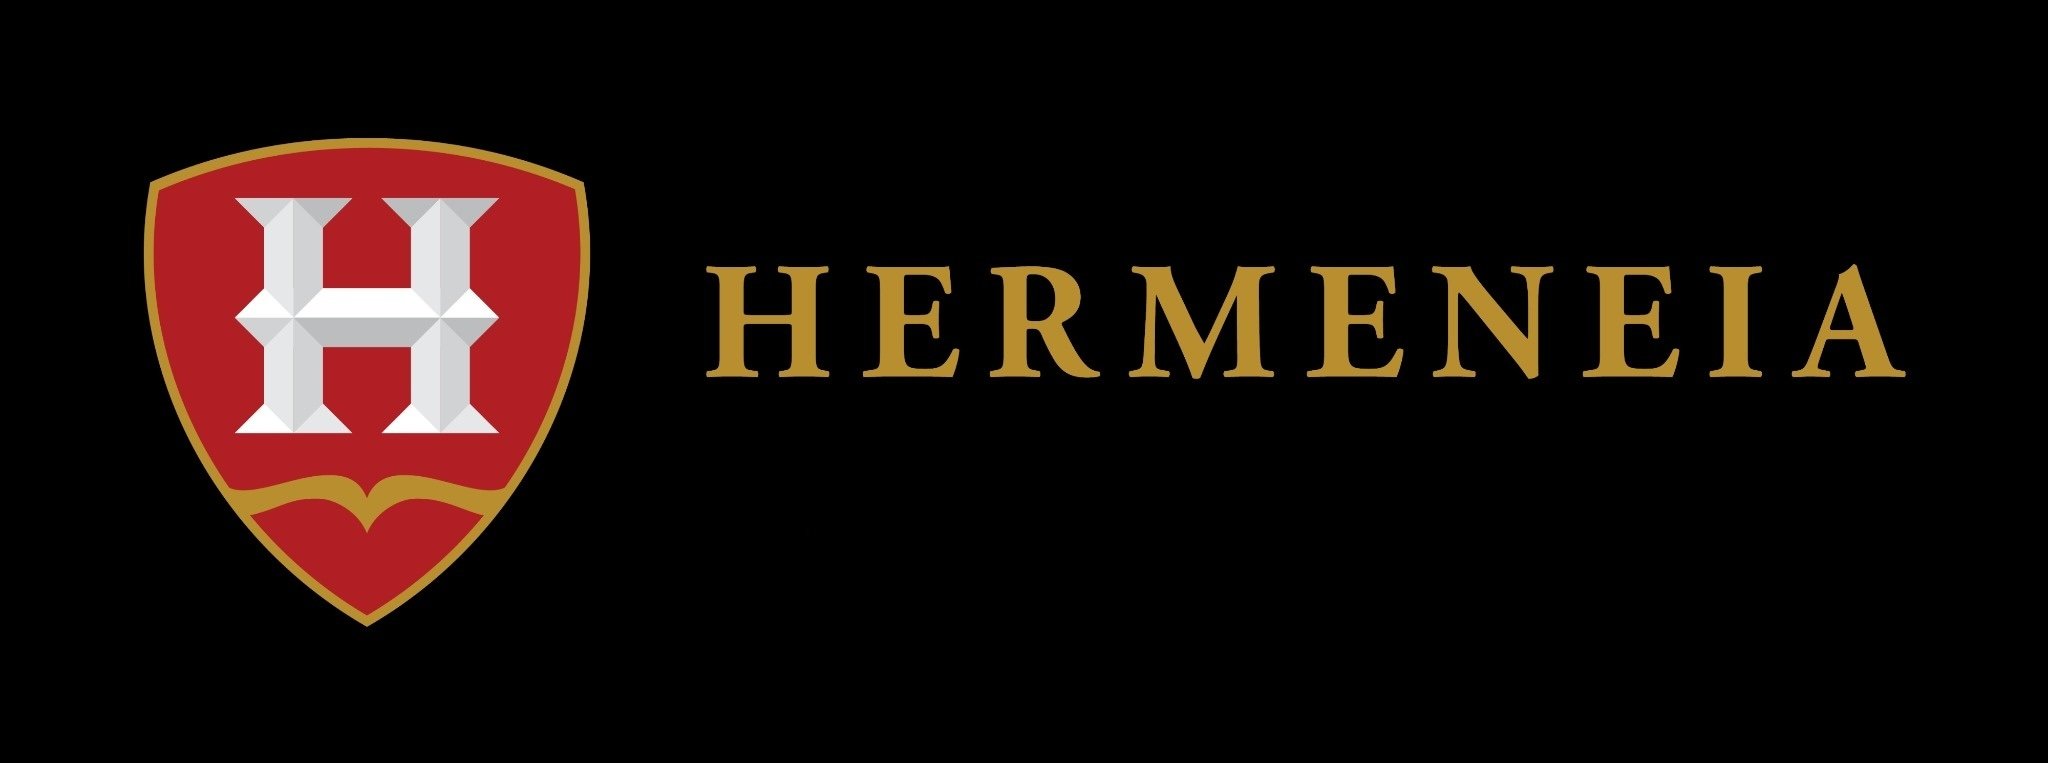 Hermeneia Bible Training Centre logo